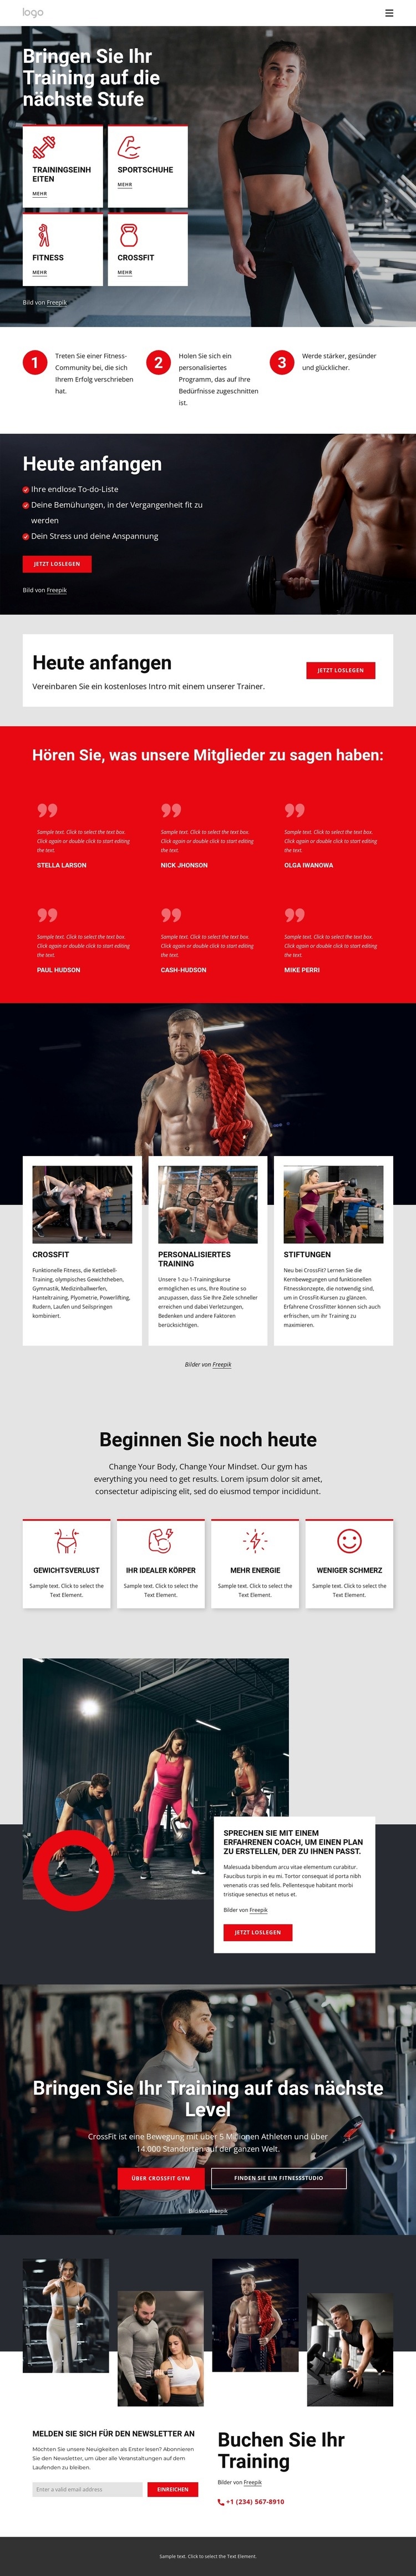 Crossfit-Trainingsgemeinschaft HTML Website Builder